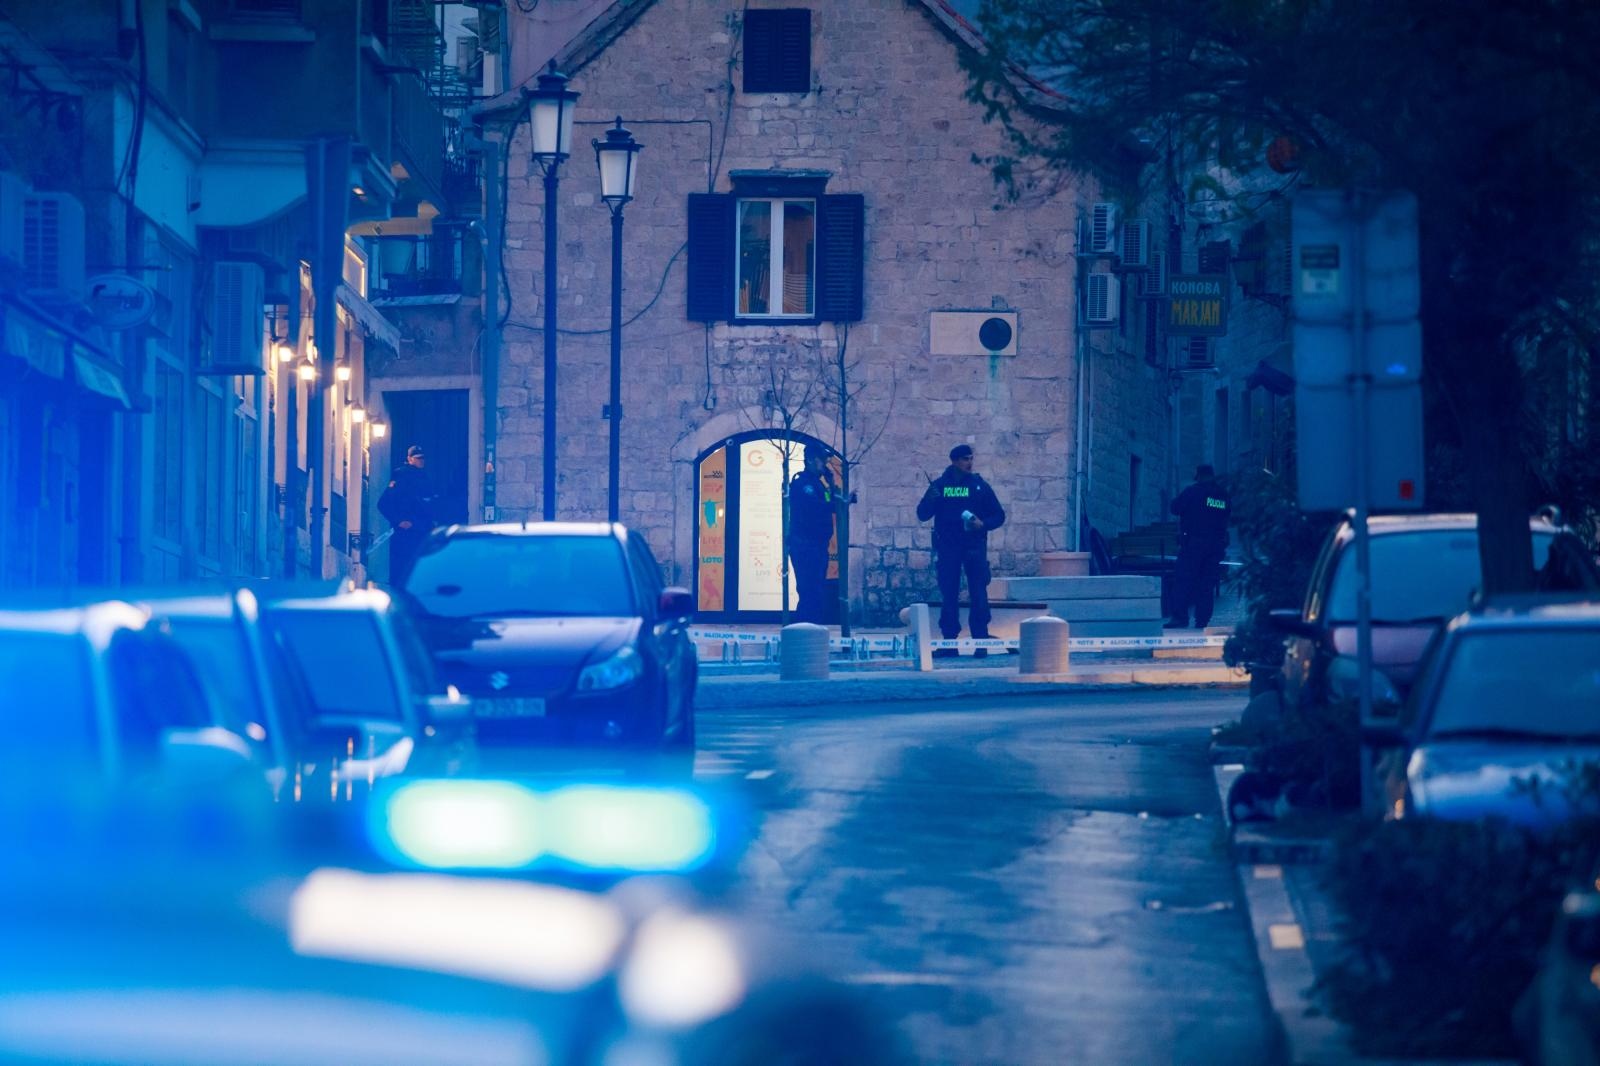 11.01.2020., U centru Splita, u blizini crkve svetog Frane u Radmilovicevoj ulici, upucan je muskarac, a nedugo nakon toga upucan je jos jedan muskarac na Sperunu. Photo: Milan Sabic/PIXSELL